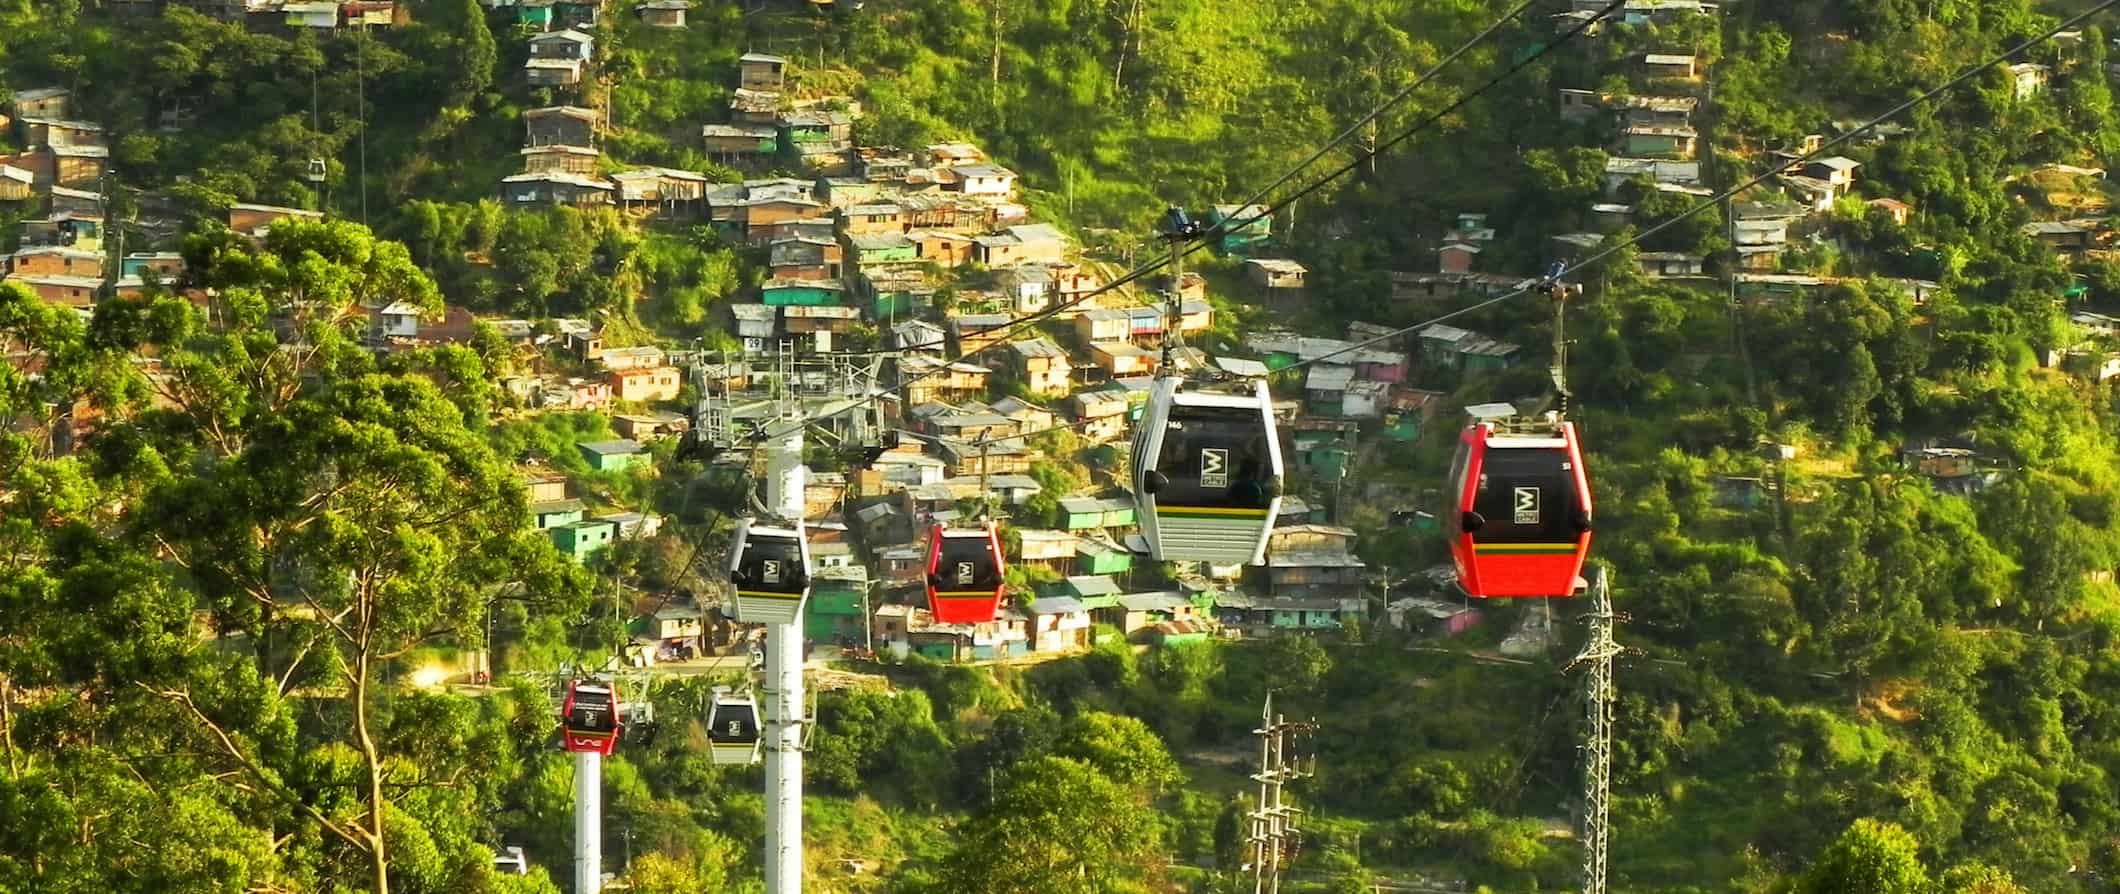 Vista dos teleféricos em Medellín, Colômbia, cercados por uma vegetação exuberante e pequenas casas construídas na encosta da montanha